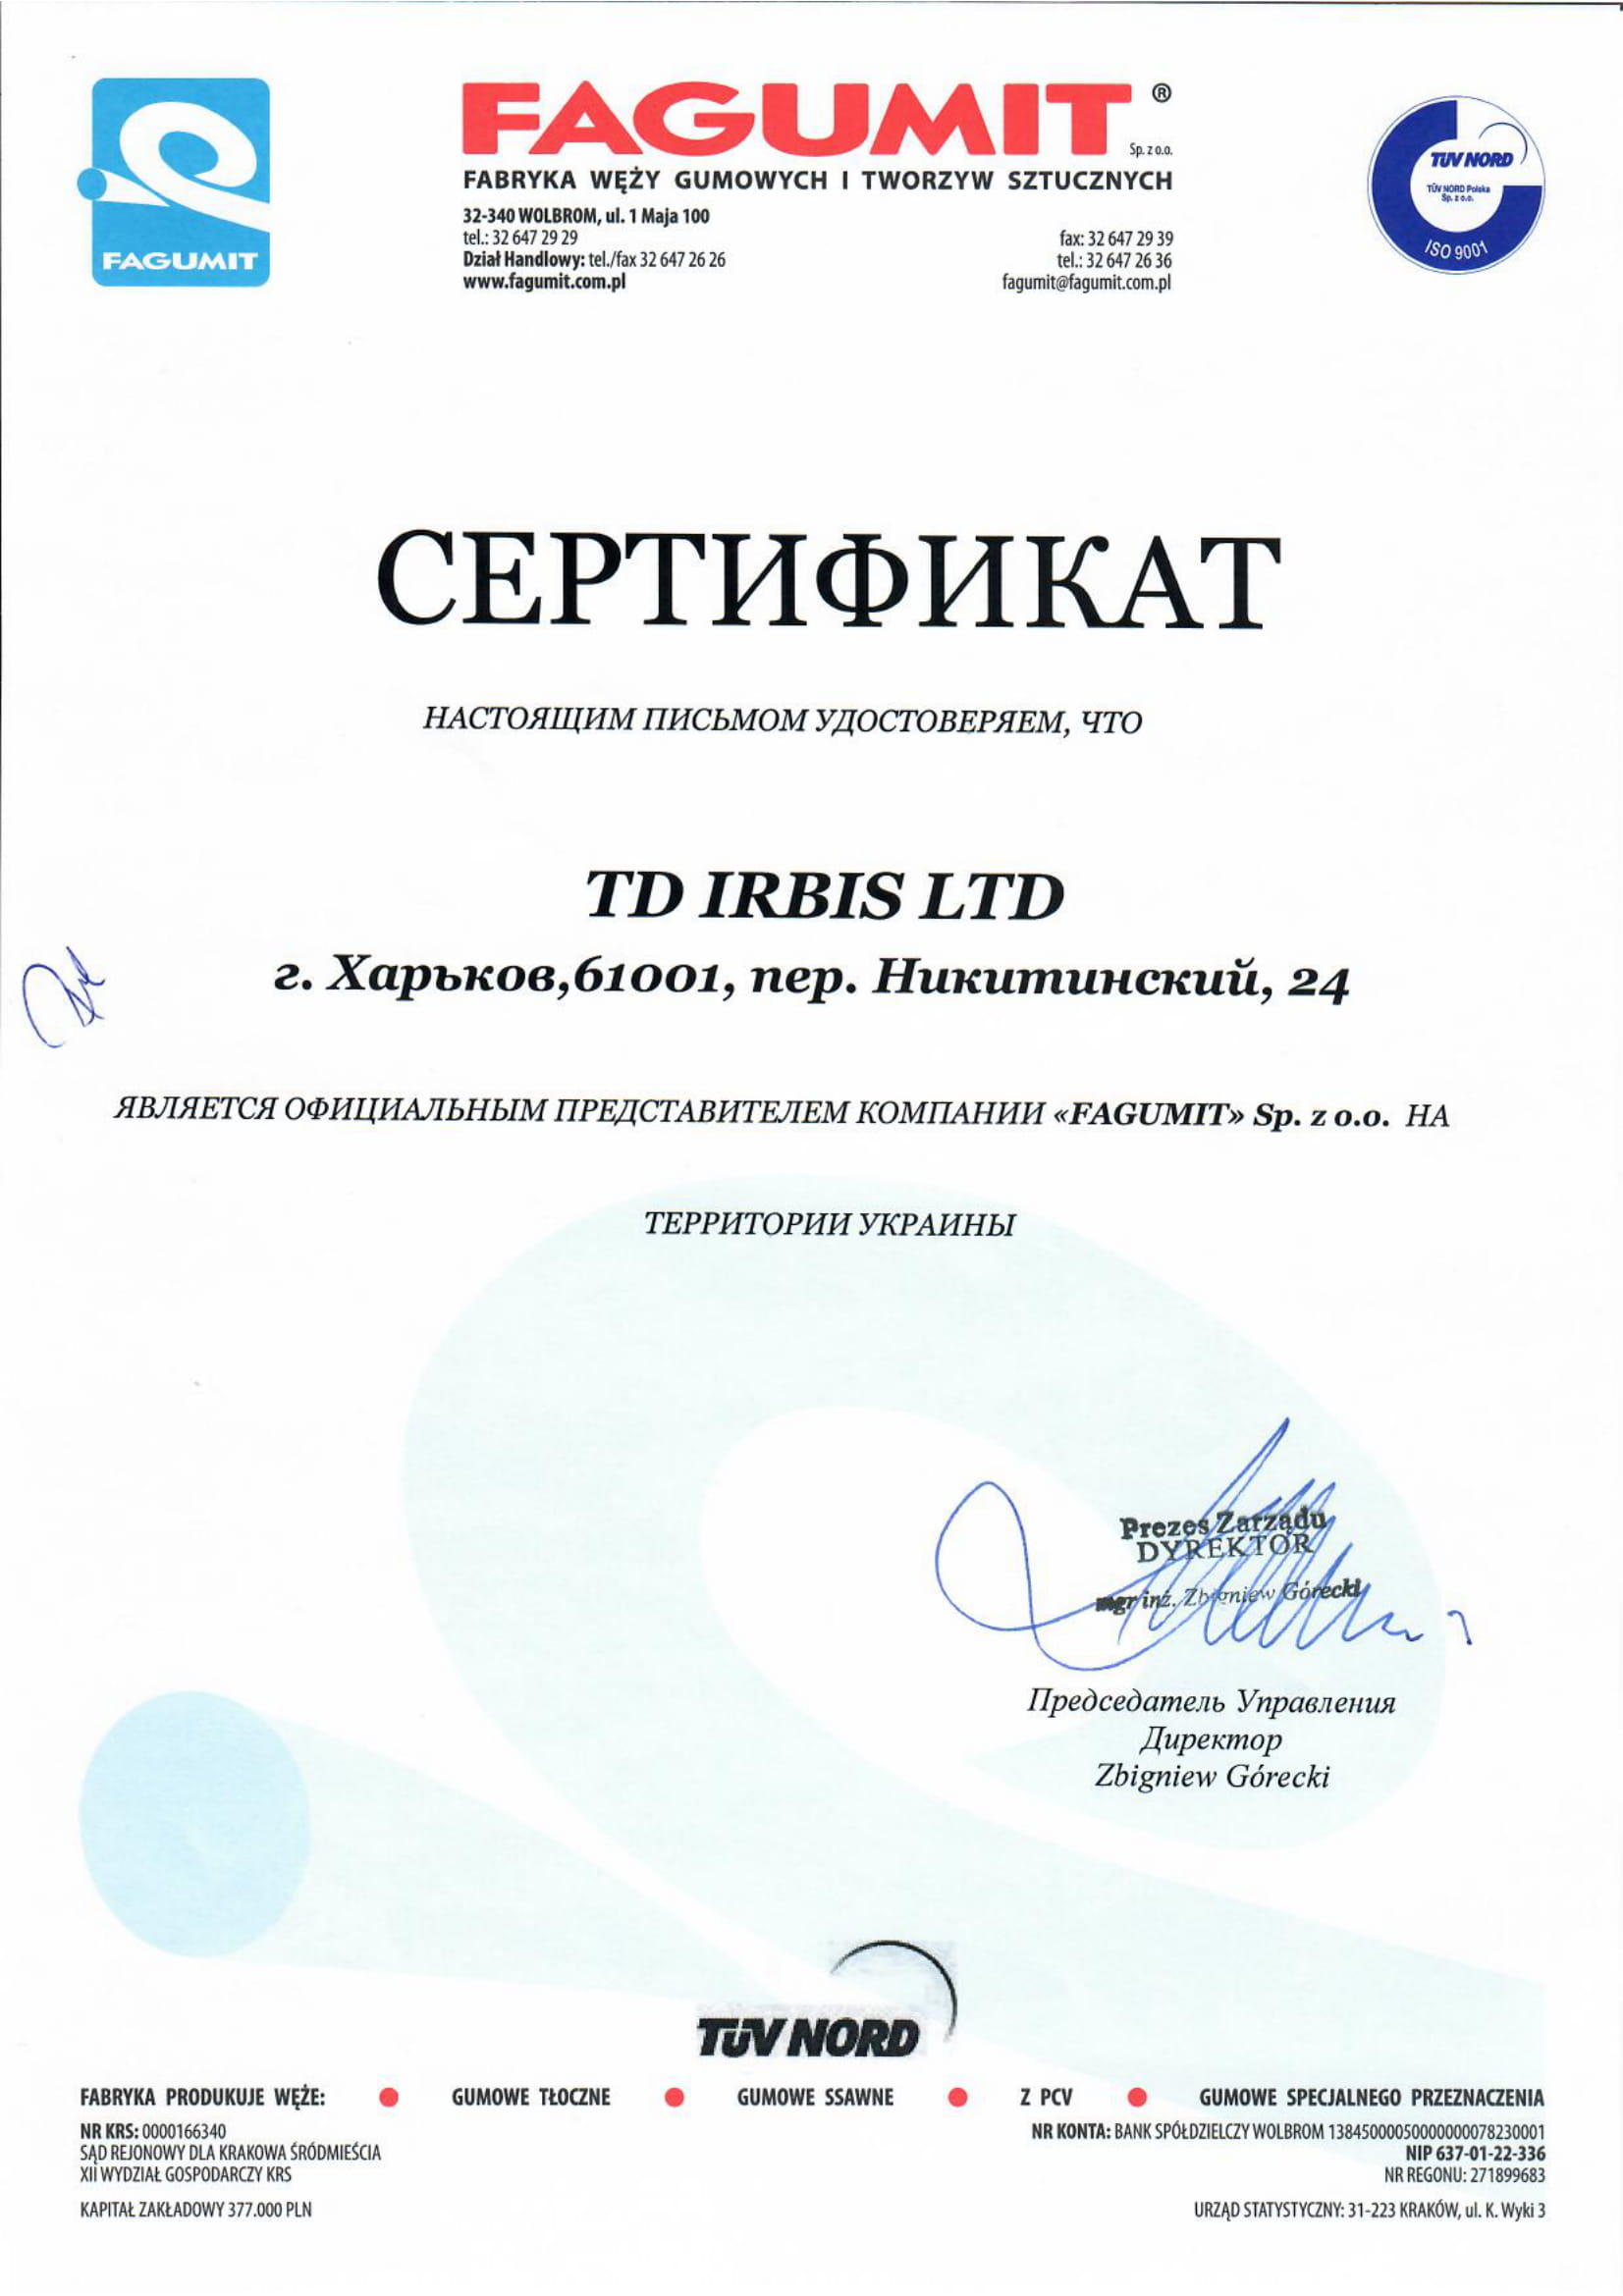 Сертифікат FAGUMIT